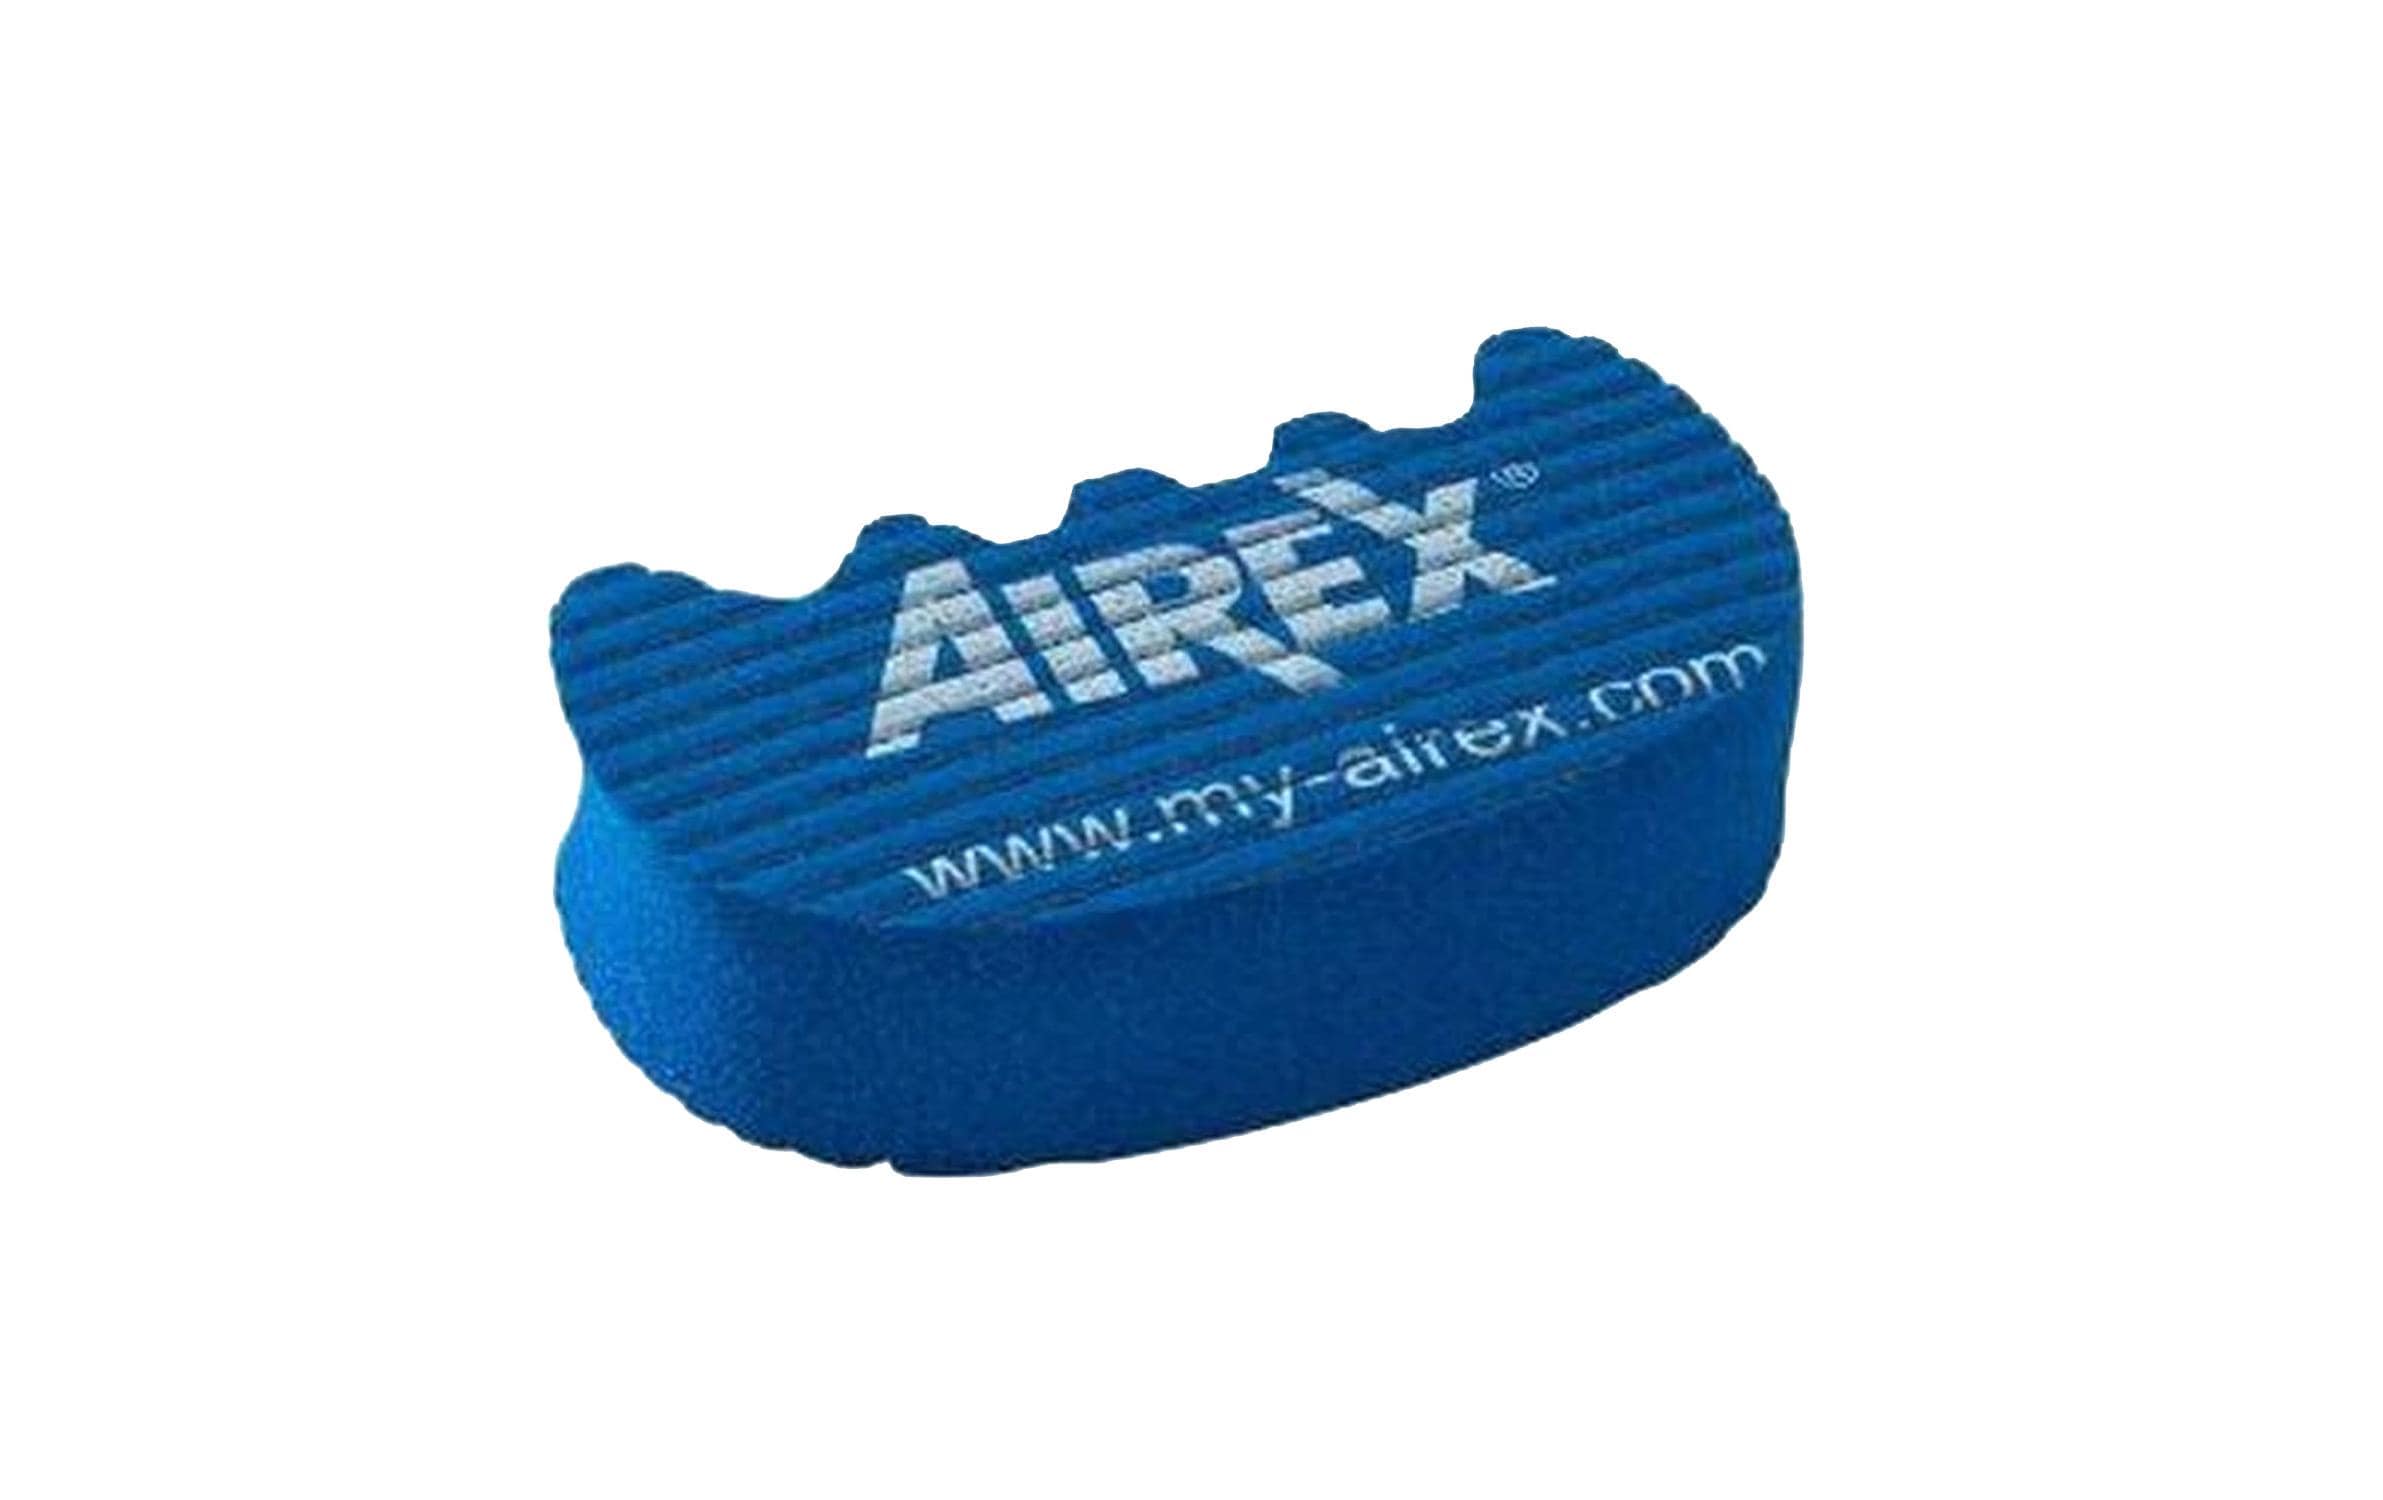 Airex Handtrainer Blau mit Airex-Logo